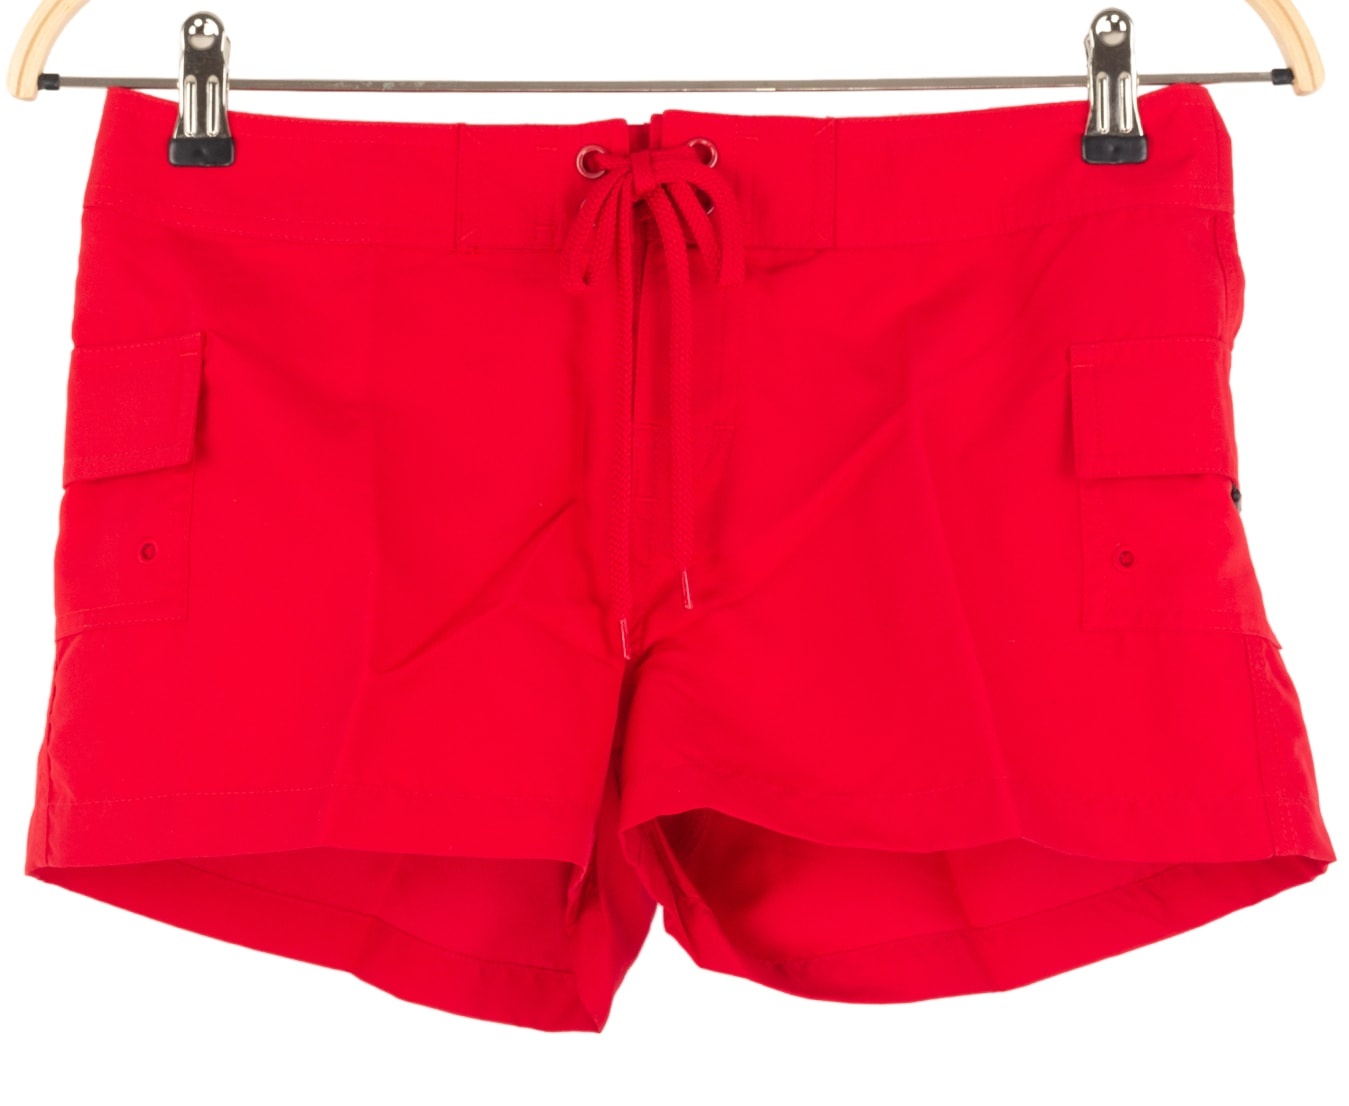 Neilpryde NP Damen red Boardshorts Badehose Hotpants Lady, Größe: S